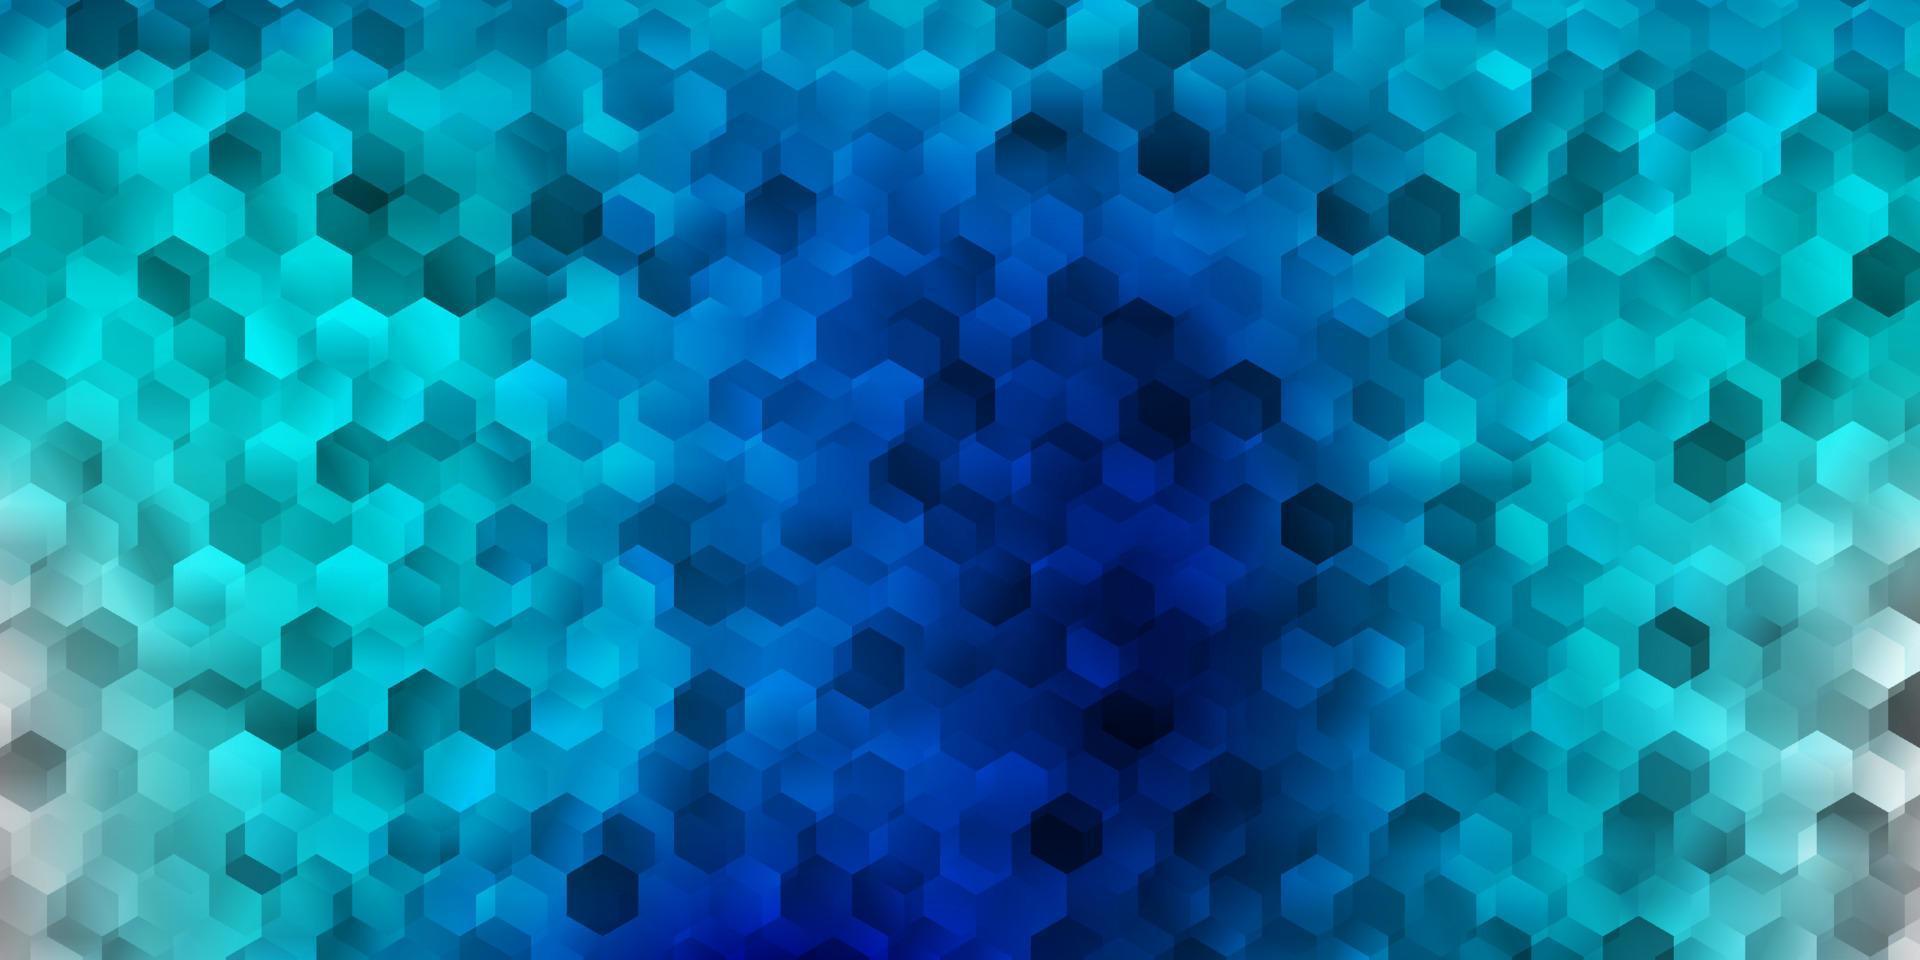 pano de fundo azul claro do vetor com um lote de hexágonos.